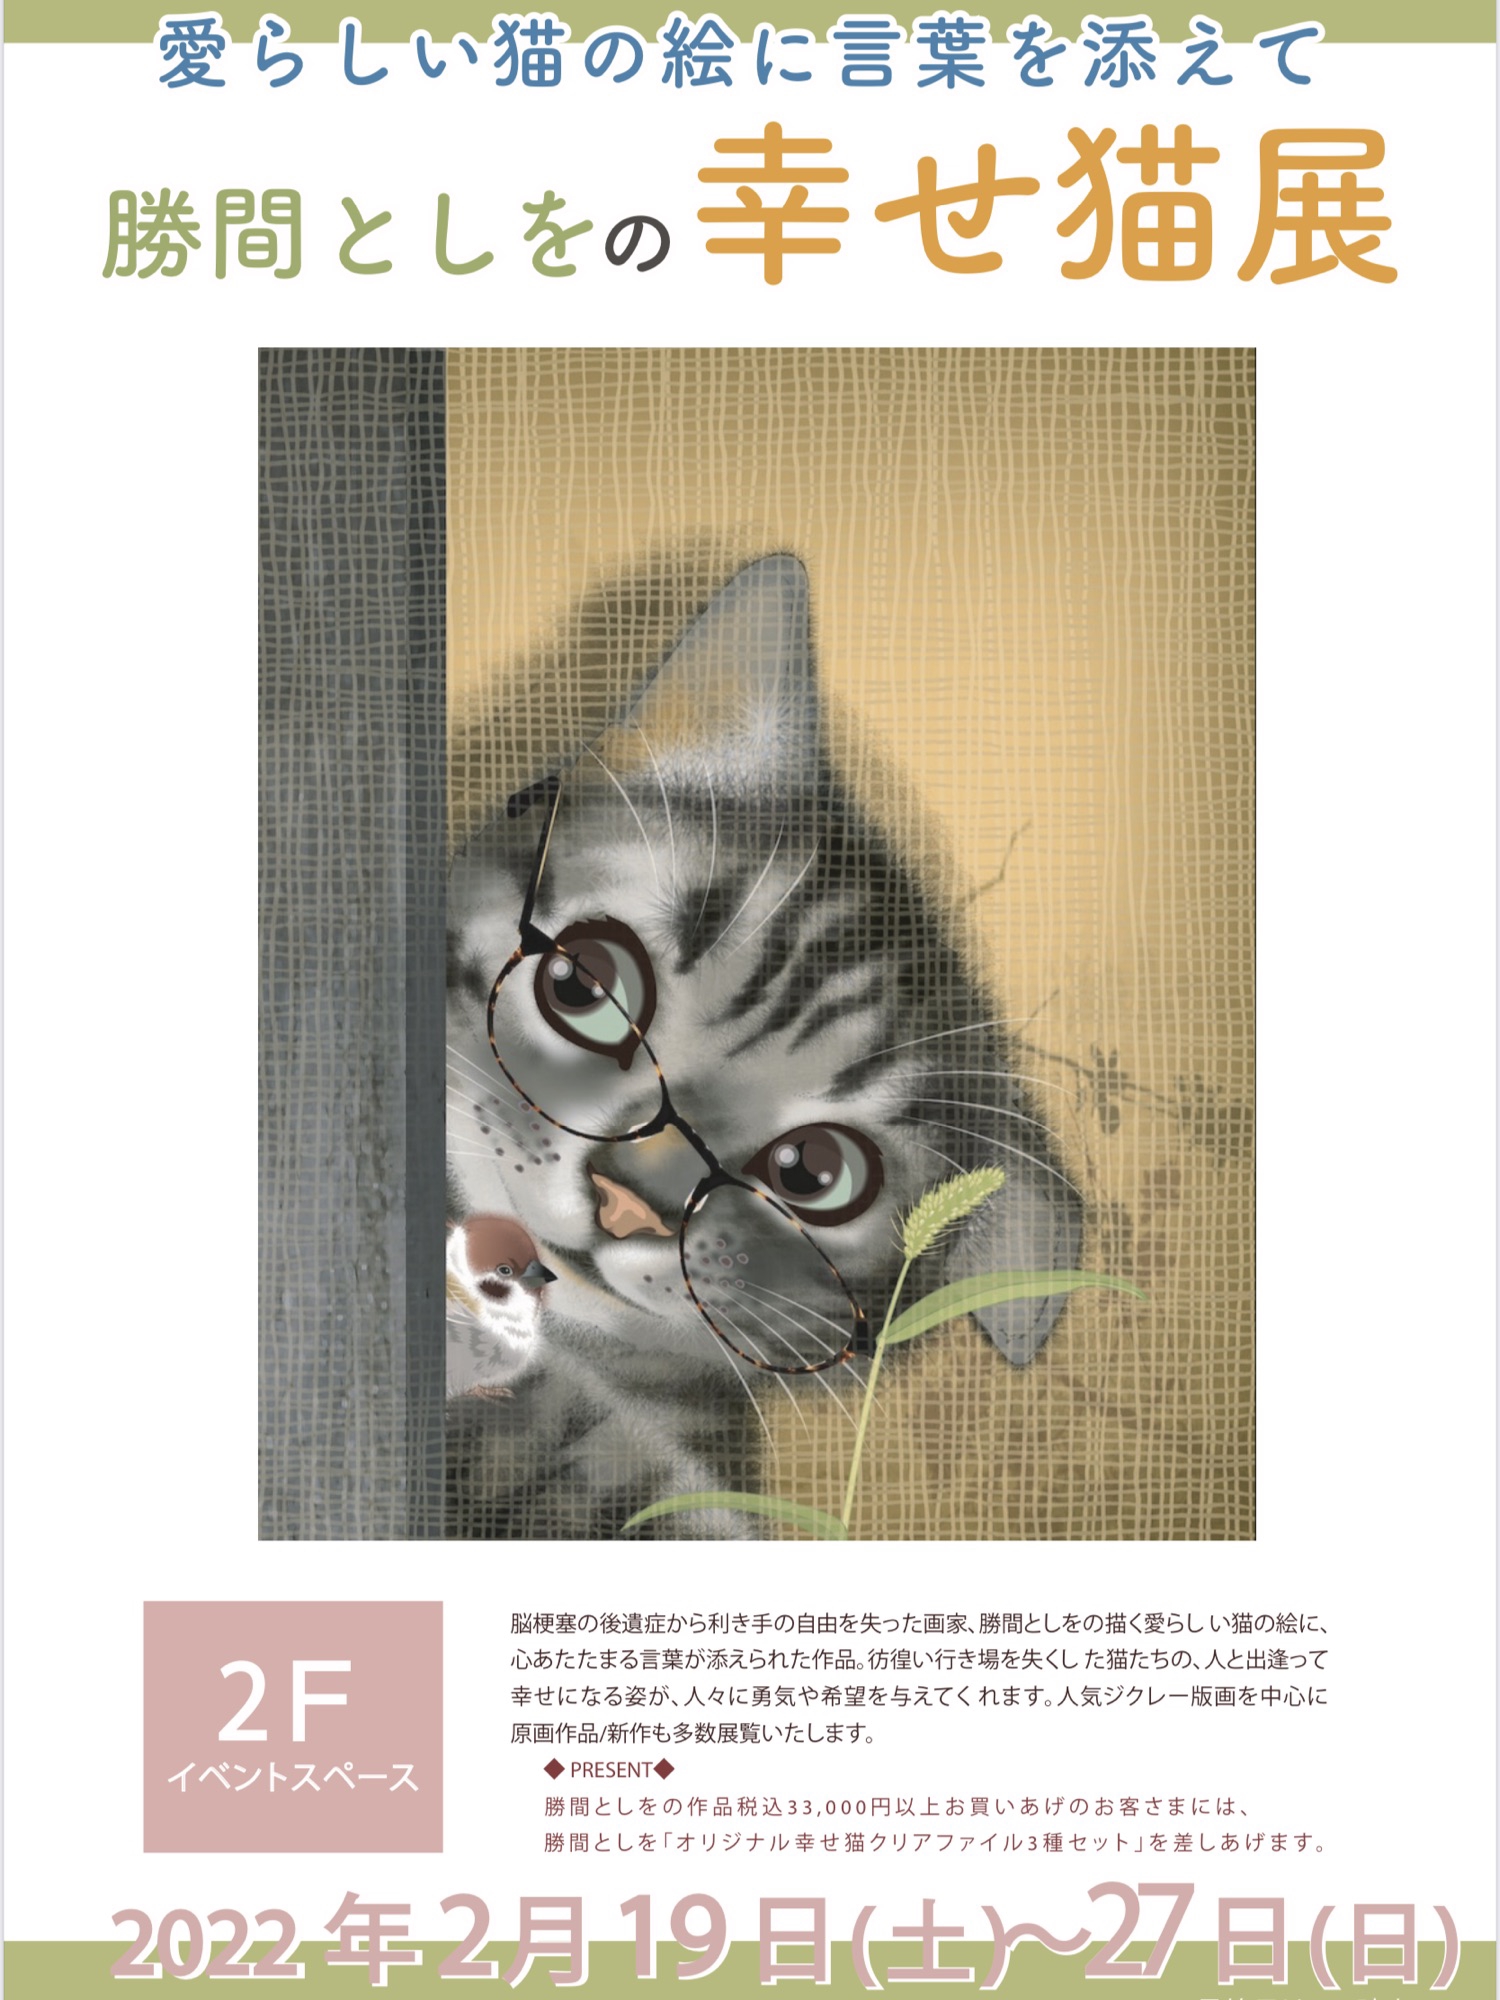 【終了】なんばマルイ「勝間としをの幸せ猫展」 - アート・プランドゥ